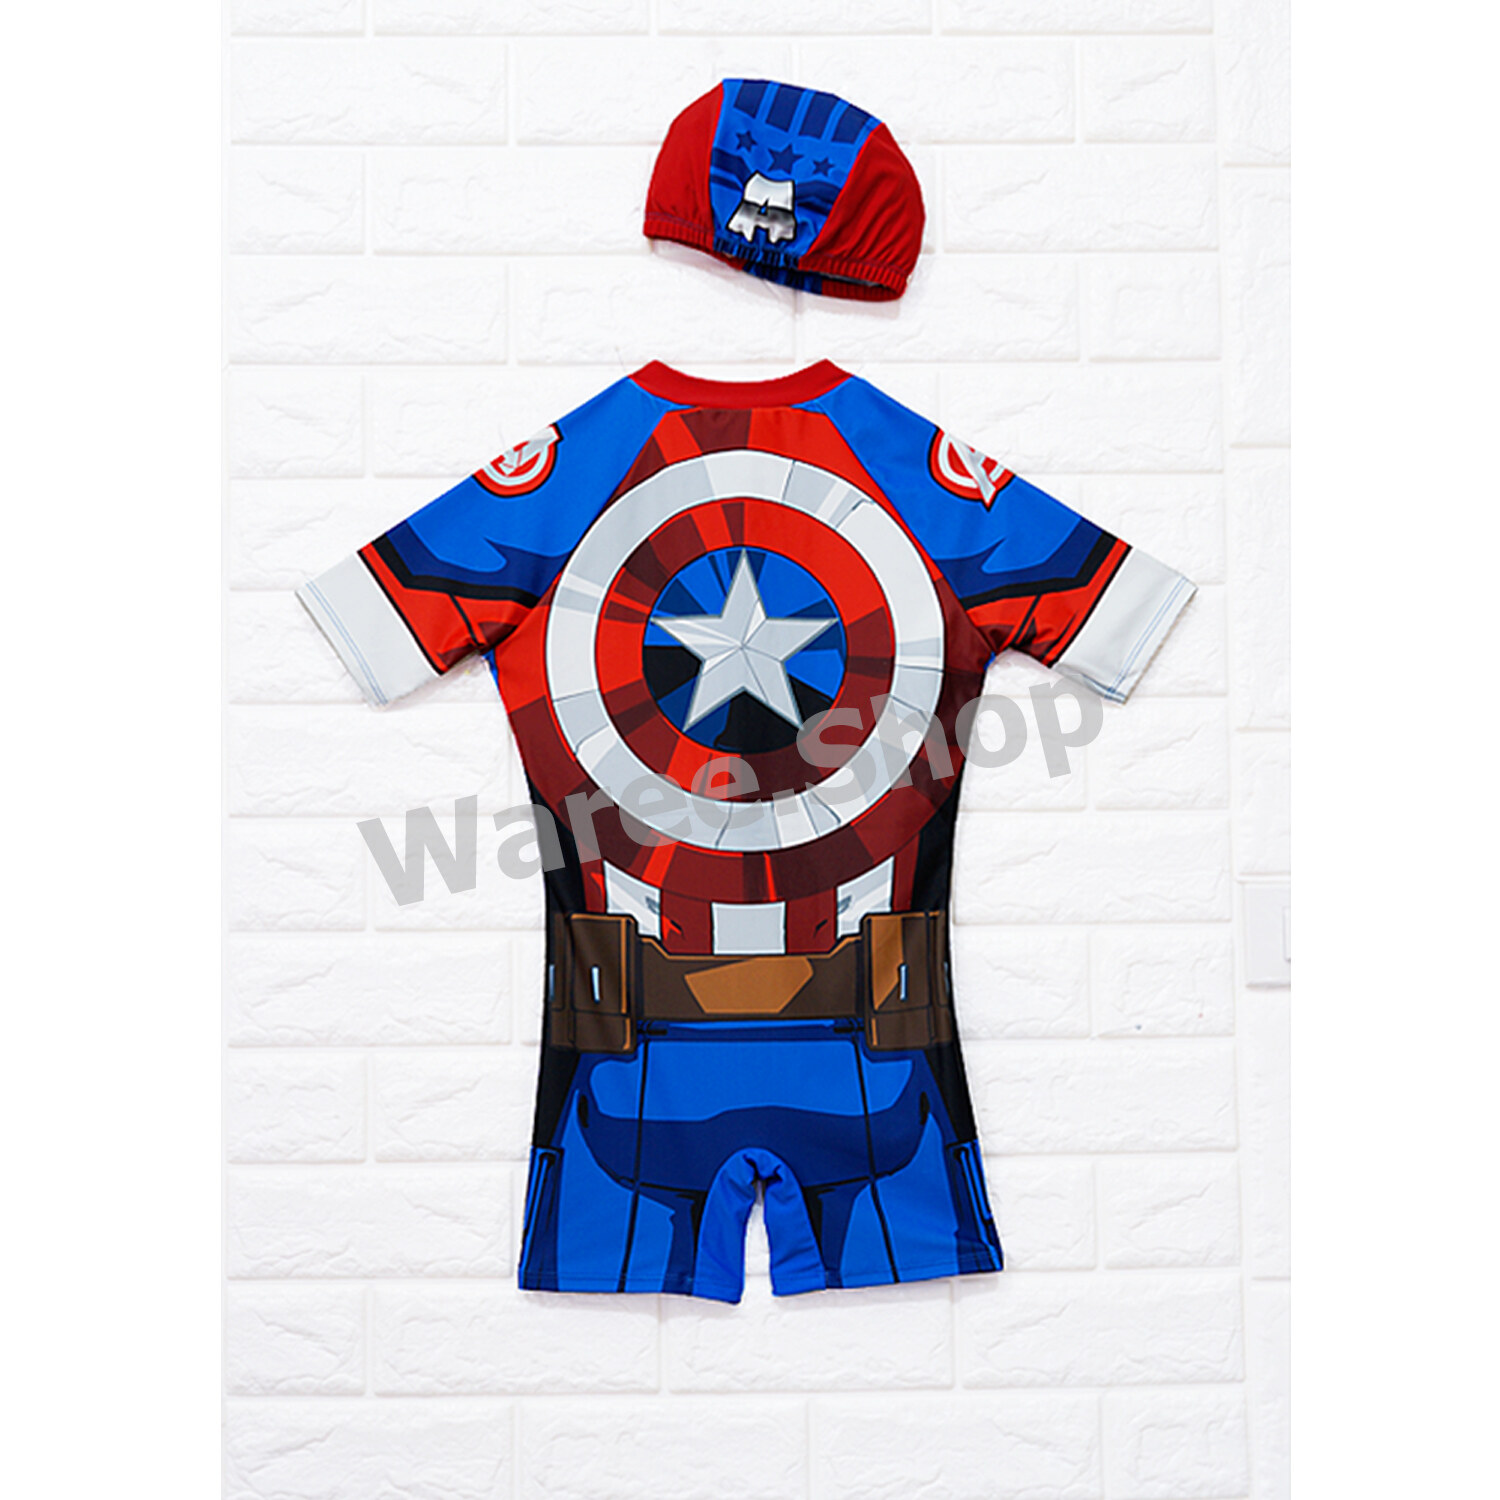 ชุดว่ายน้ำ เด็กชาย กัปตันอเมริกา ลิขสิทธ์แท้ Captain America (Avenger)  แถมหมวก กับ ถุงใส่ชุดว่ายน้ำ ชุดว่ายน้ำเด็กชาย ว่ายน้ำเด็ก เสื้อว่ายน้ำ